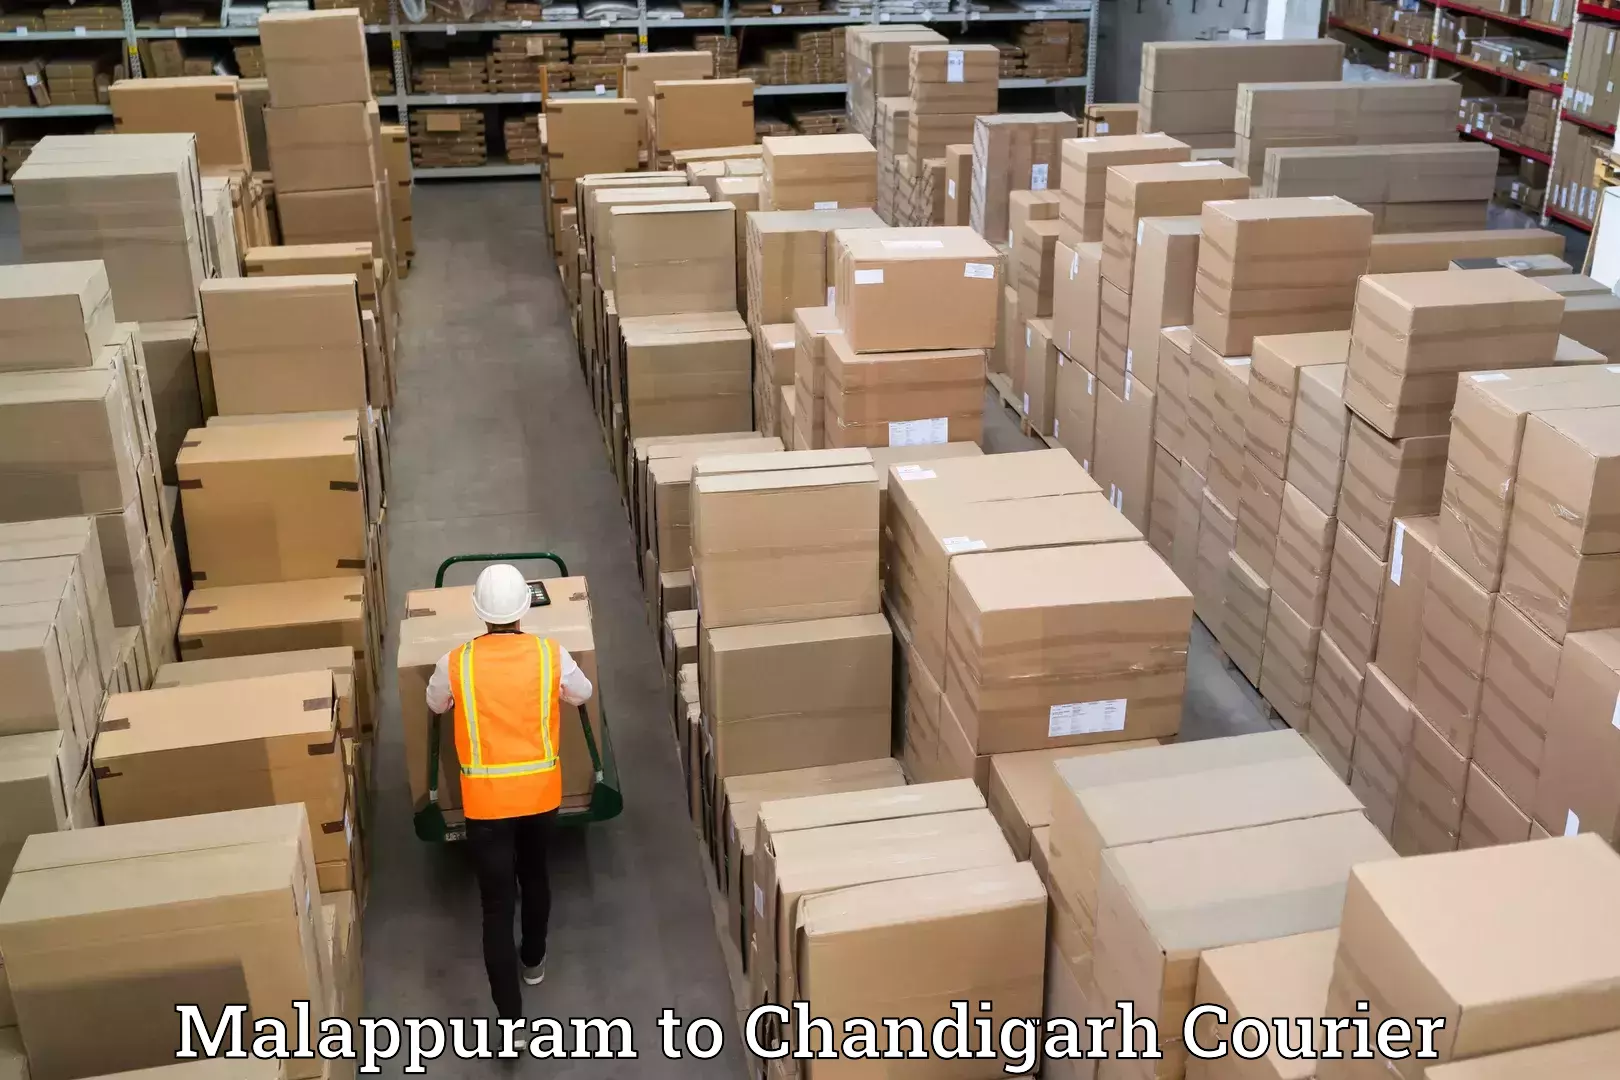 Door-to-door relocation services Malappuram to Chandigarh